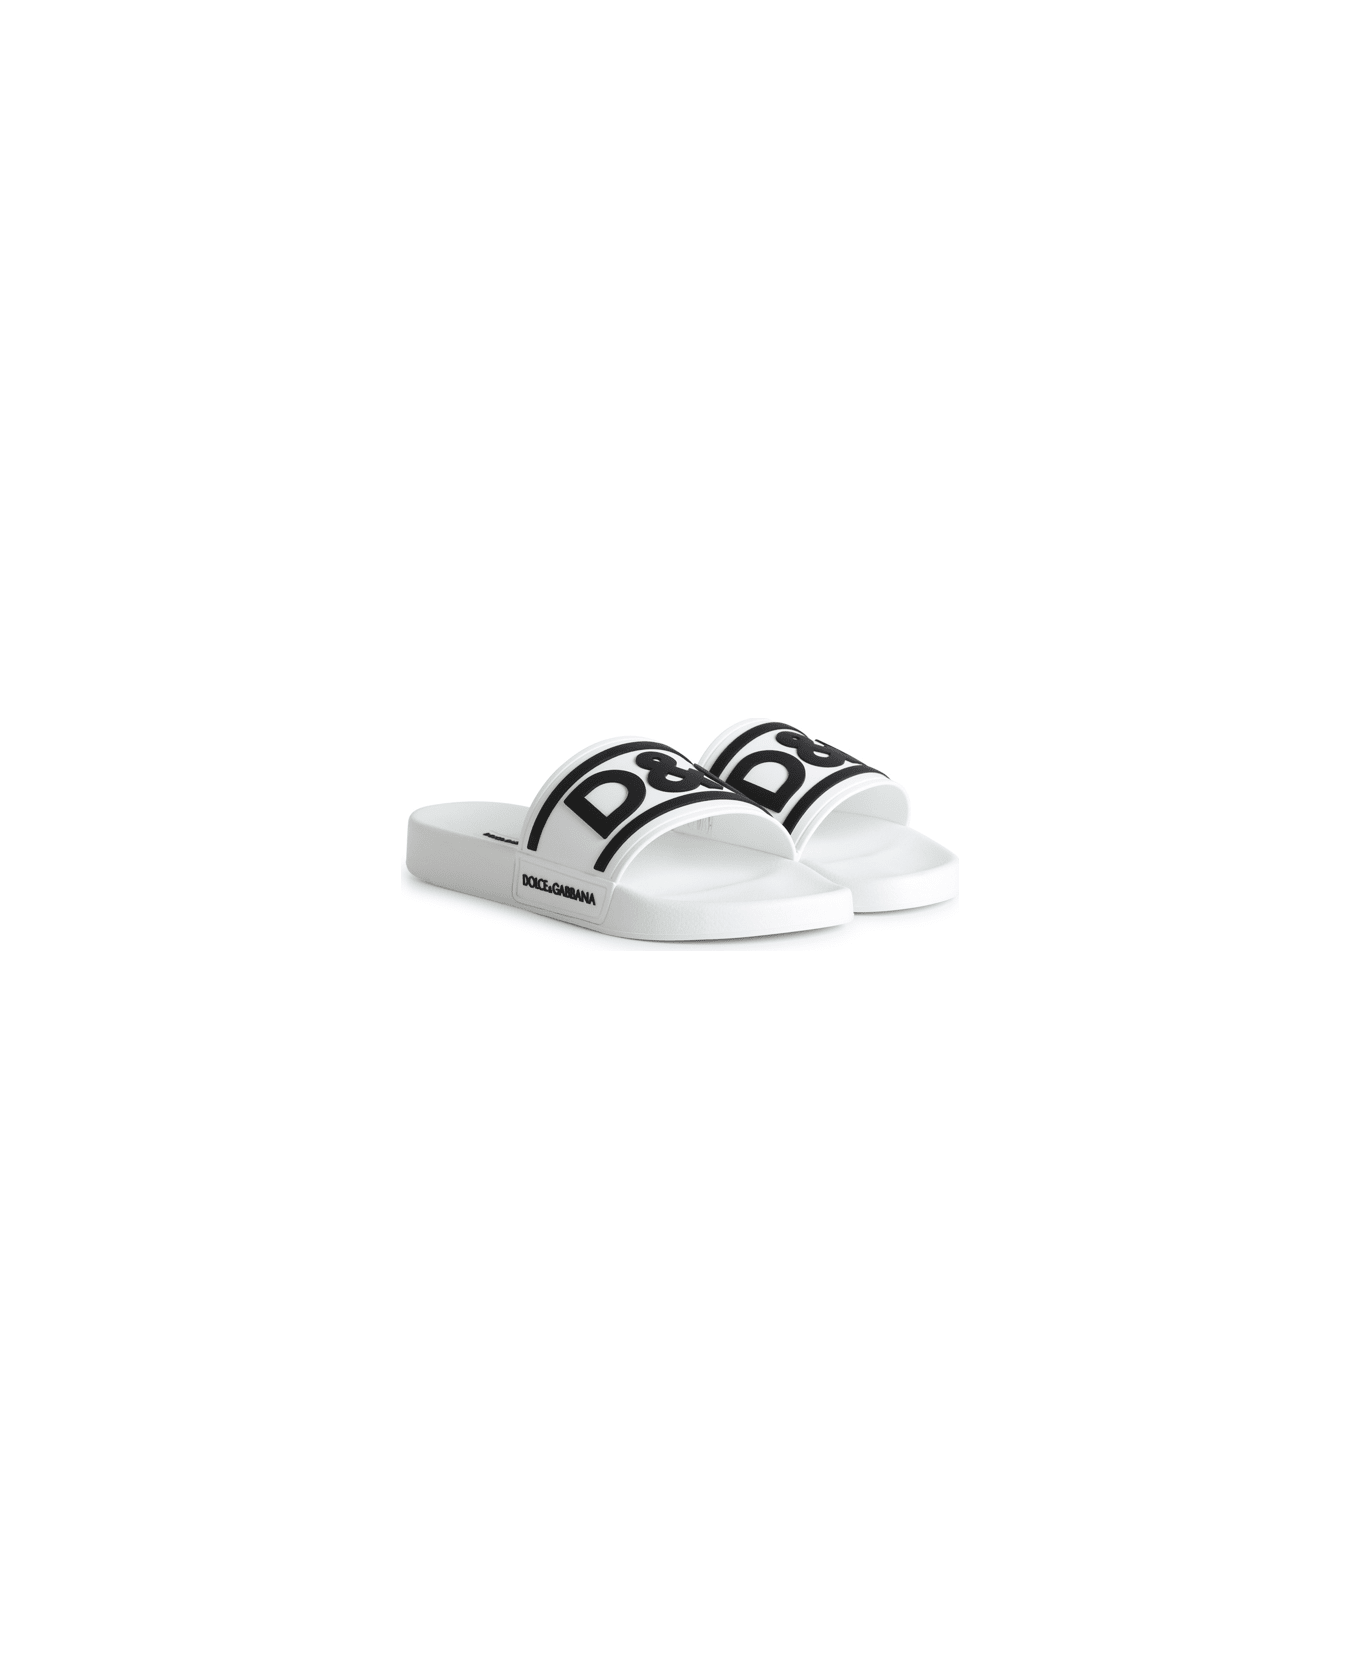 Dolce & Gabbana Beachwear Slide In Rubber With Dg Logo - White/black